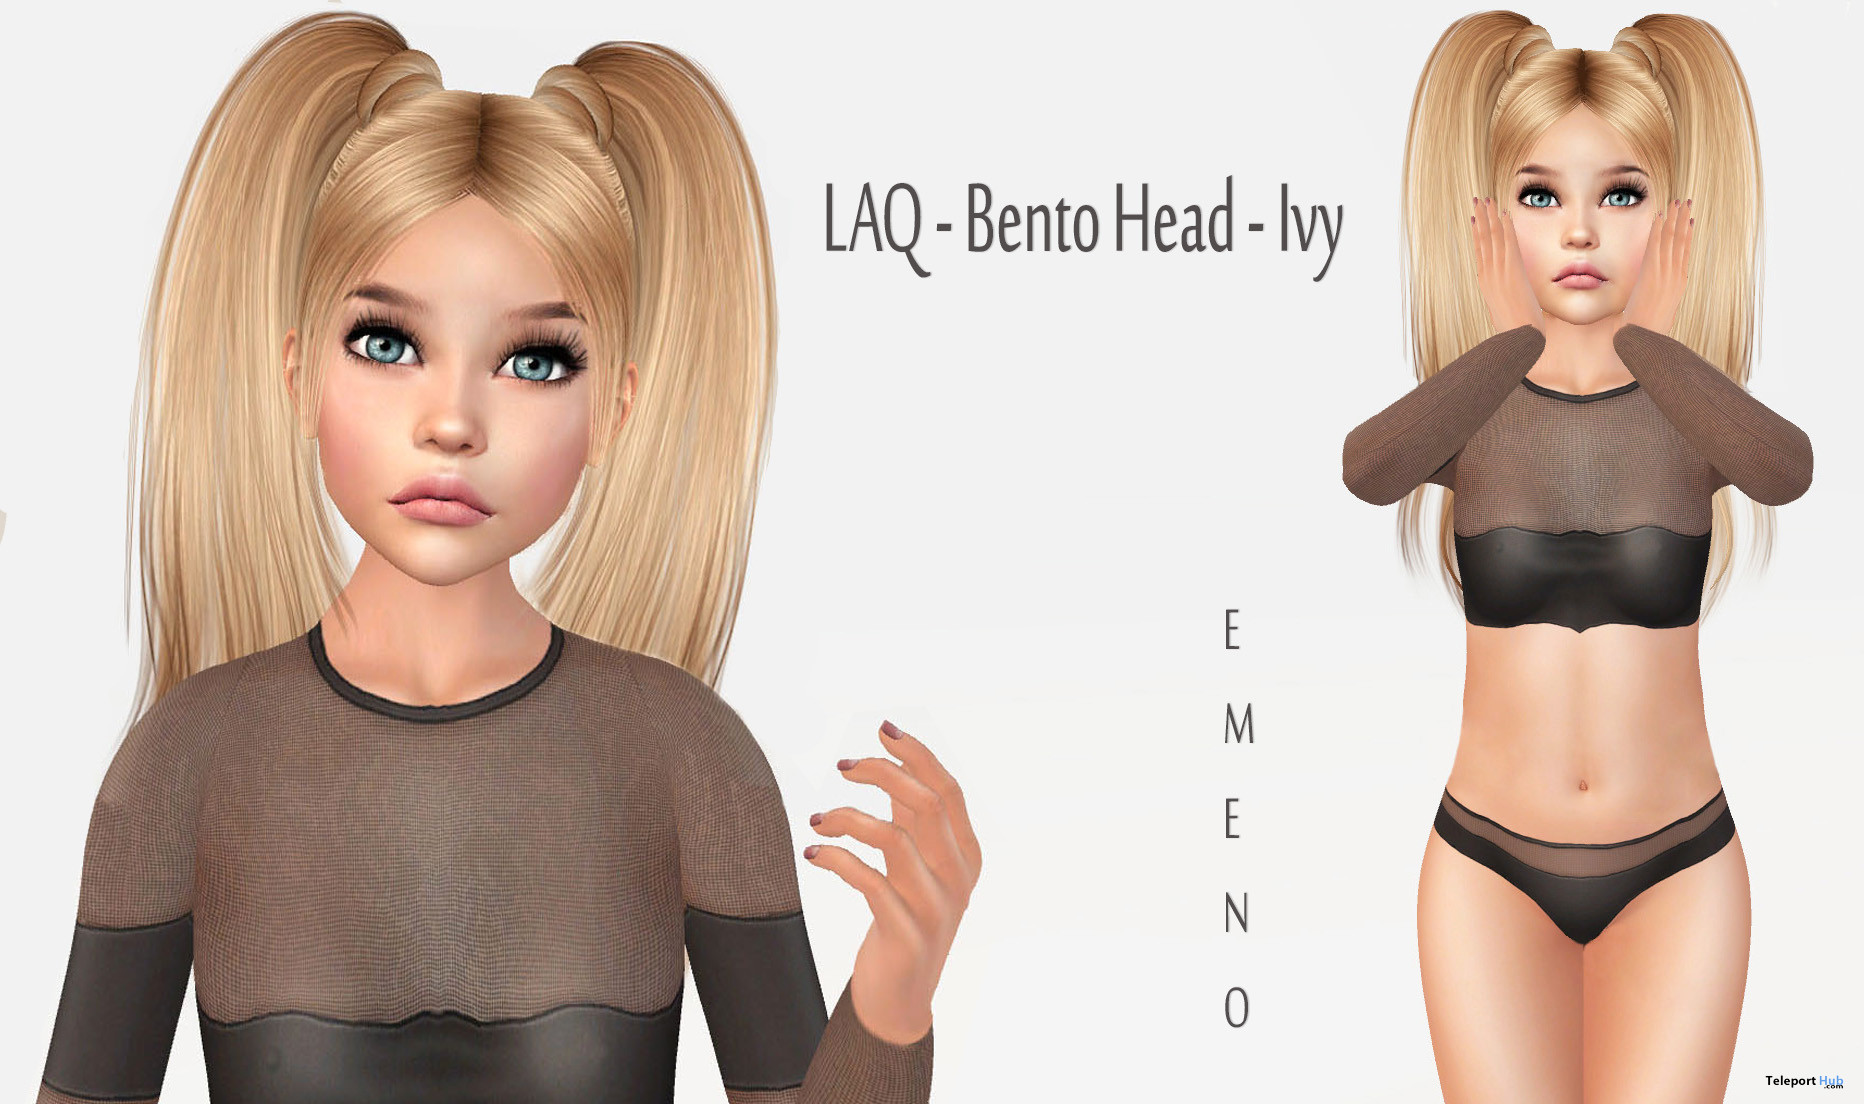 Shape For LAQ Bento Head Ivy 7L Promo by Emeno - Teleport Hub - teleporthub.com